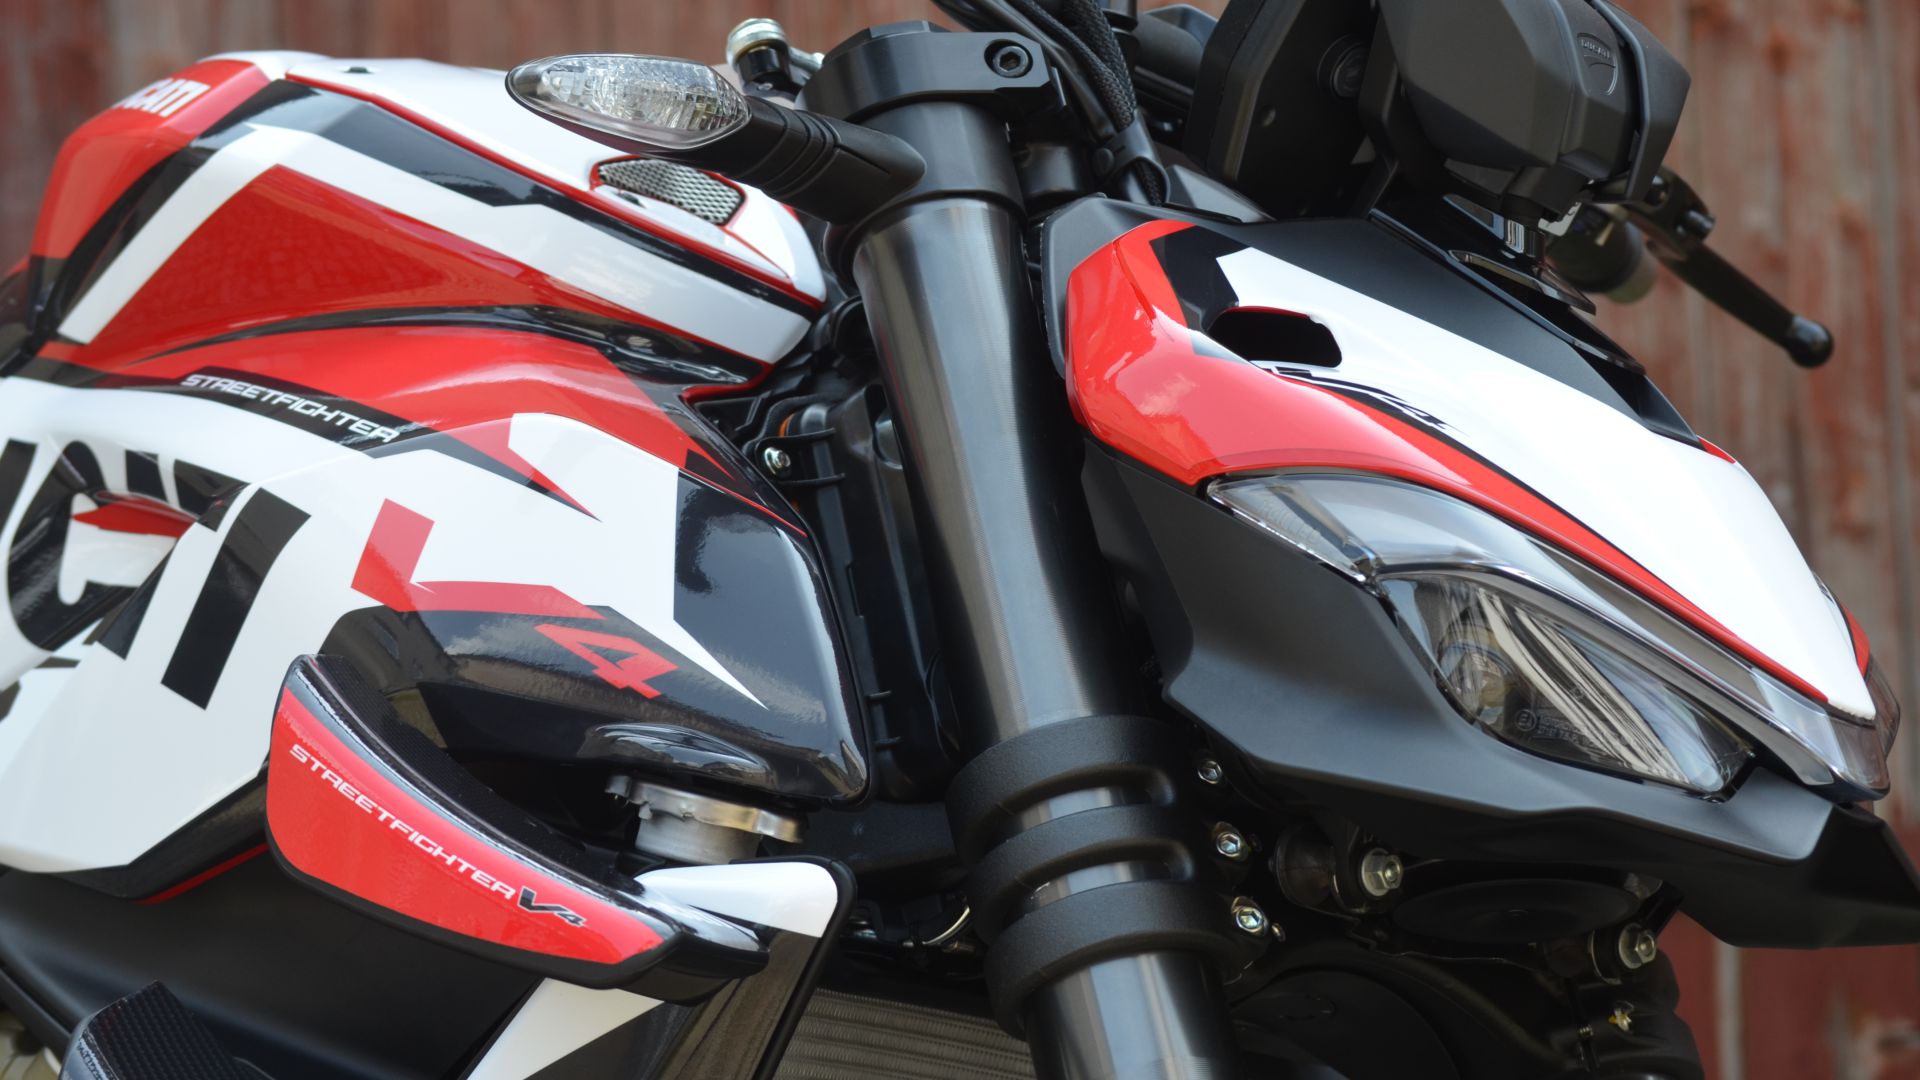 Honda CBR 1000 RR Motorrad Aufkleber Dekor Sticker Set